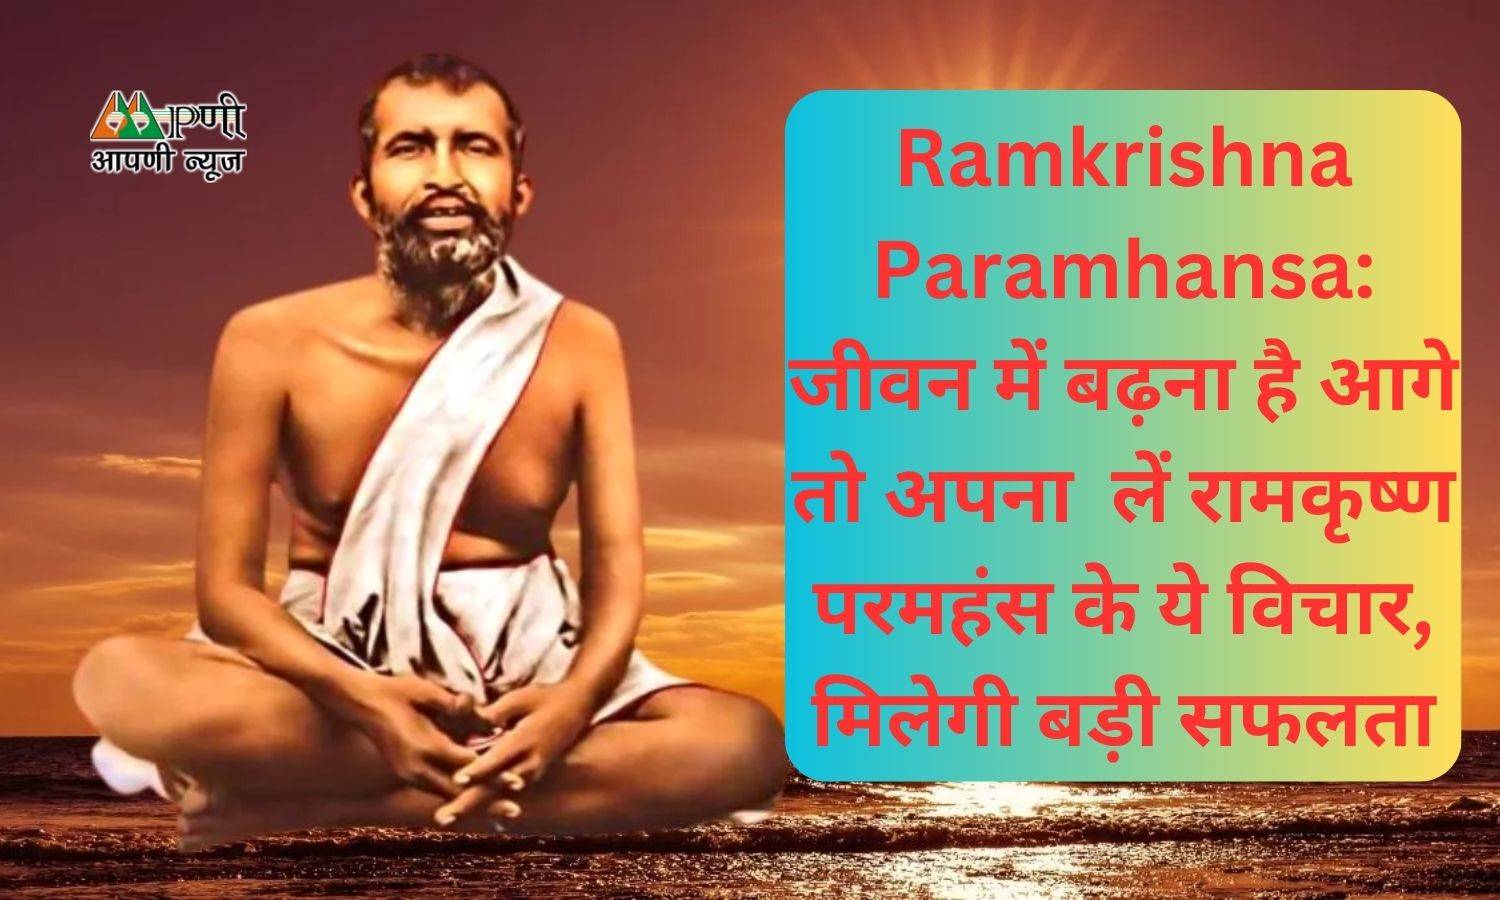 Ramkrishna Paramhansa: जीवन में बढ़ना है आगे तो अपना  लें रामकृष्ण परमहंस के ये विचार, मिलेगी बड़ी सफलता